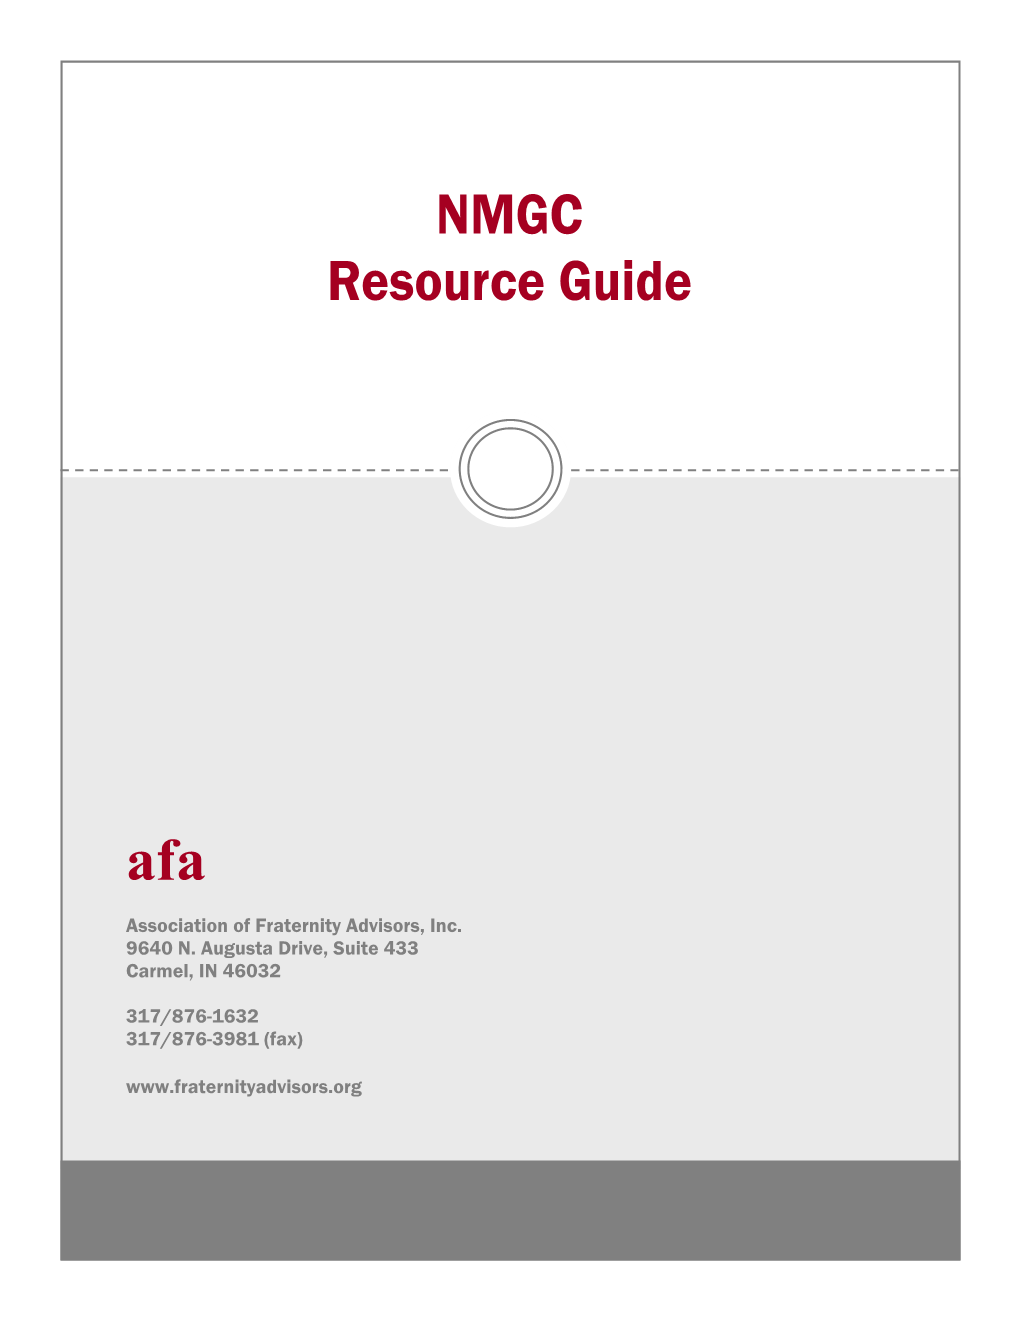 NMGC Resource Guide.Pdf